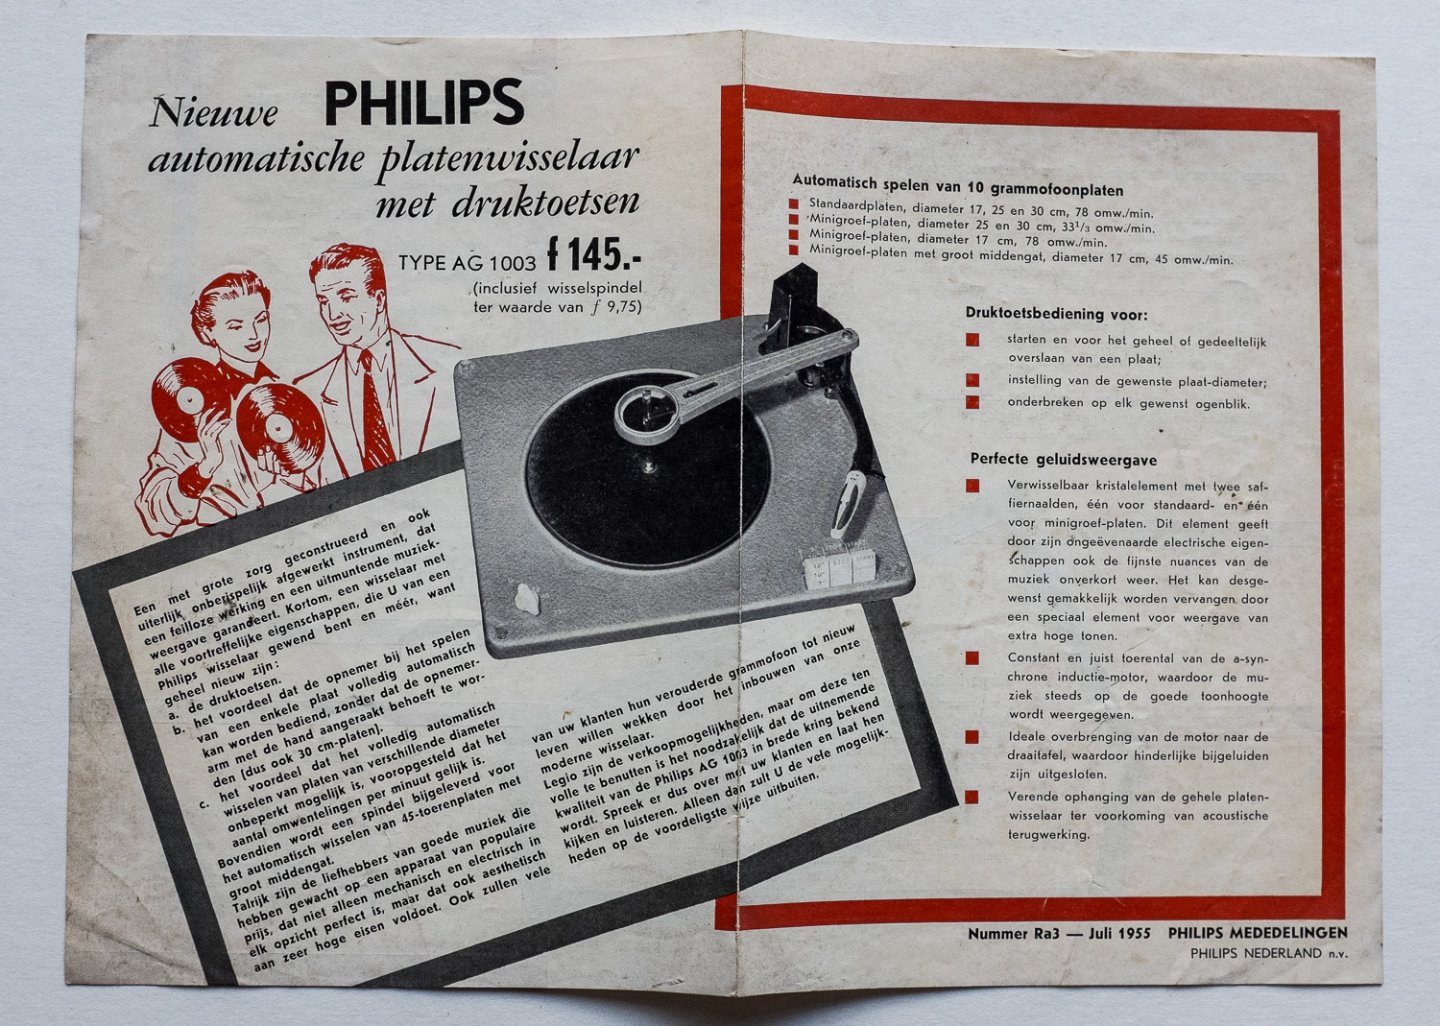 Philips Gloeilampenfabrieken Nederland n.v., Eindhoven - Nieuwe Philips automatische platenwisselaar met druktoetsen - type AG 1003